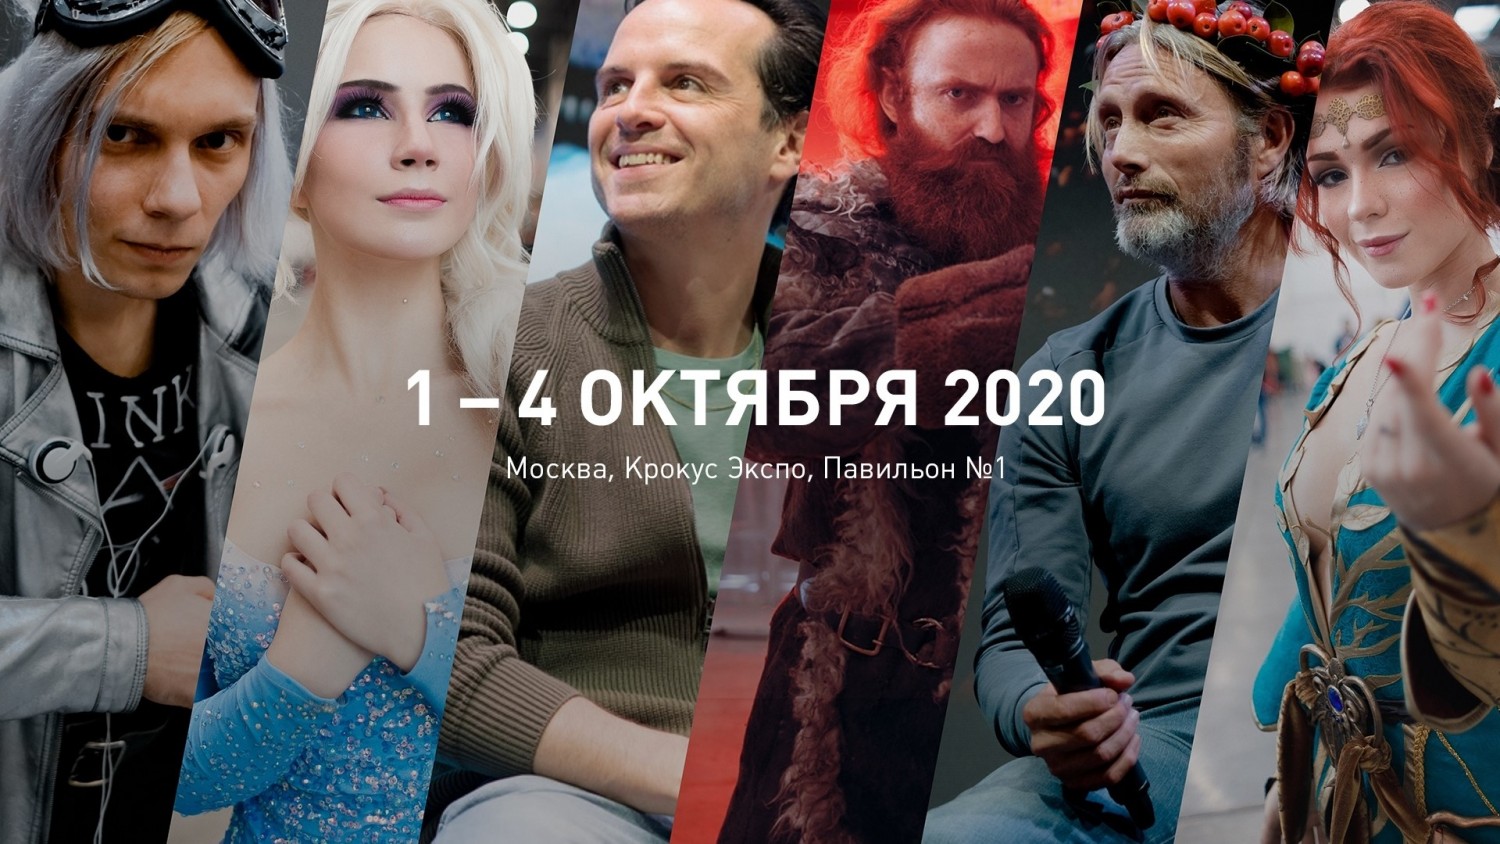 Объявлены даты проведения «Игромира» и Comic Con Russia 2020